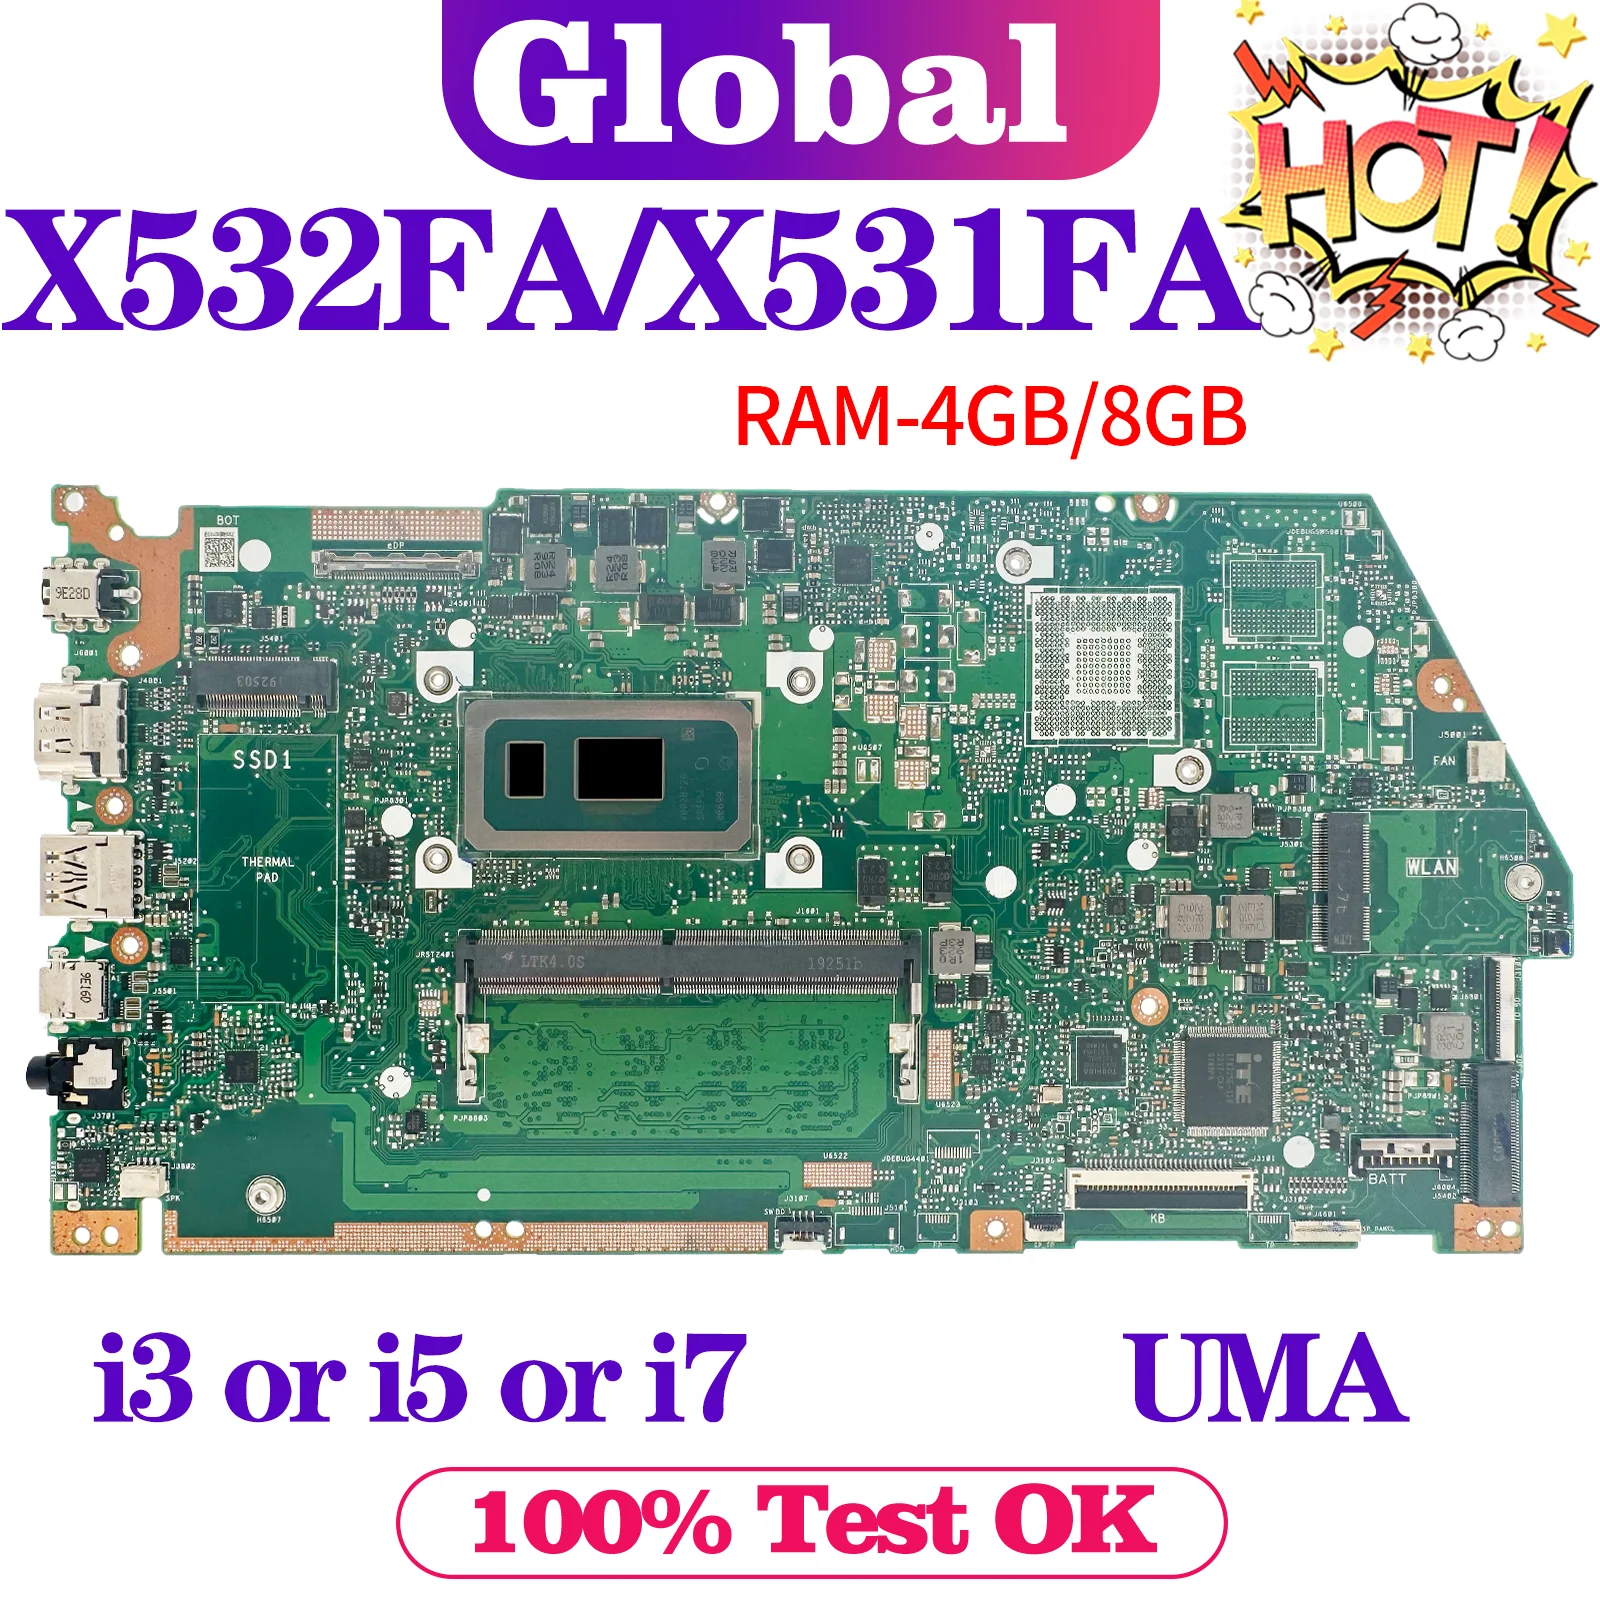 

X532FA X531FA Mainboard For ASUS X532FL X532FLC X532FAC X532F X531F S531F K531F V531F S532F K532F V532F Laptop Motherboard